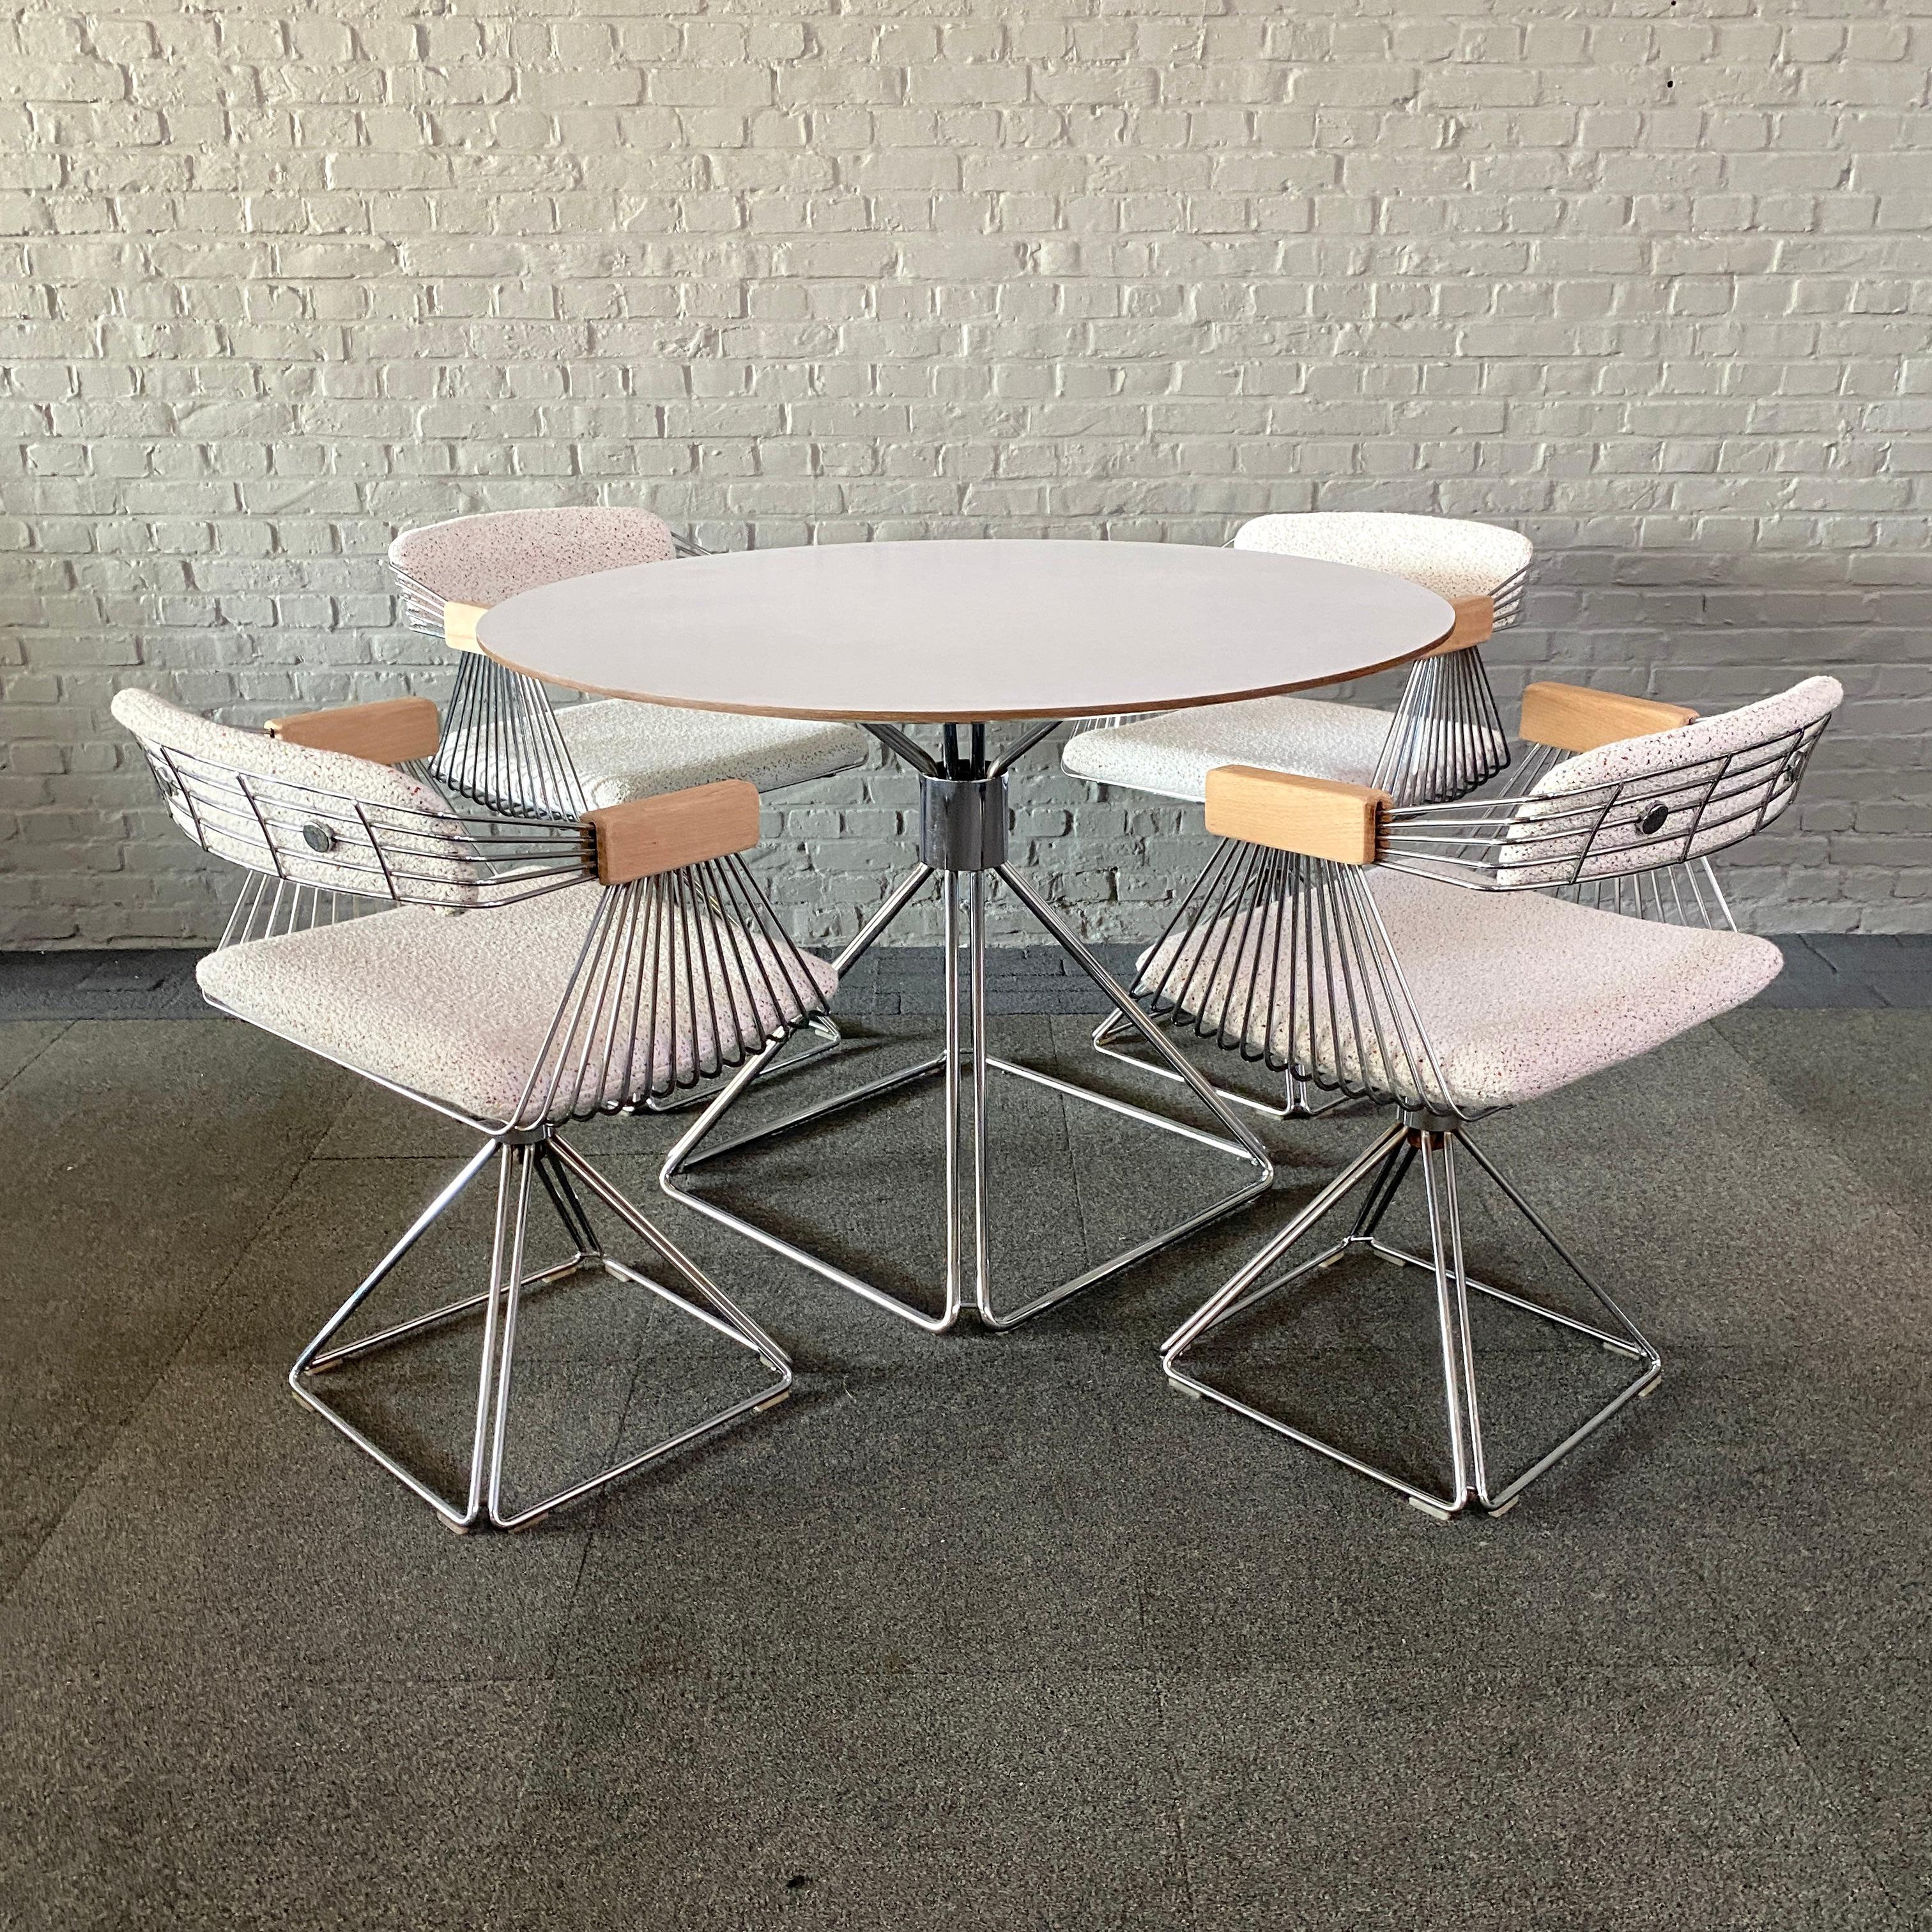 Eleg et élégant ensemble de salle à manger.
Conçu par le designer industriel belge Rudi Verelst pour Novalux.
L'ensemble se compose d'une table ronde et de 4 fauteuils pivotants.

Ces fauteuils pivotants 